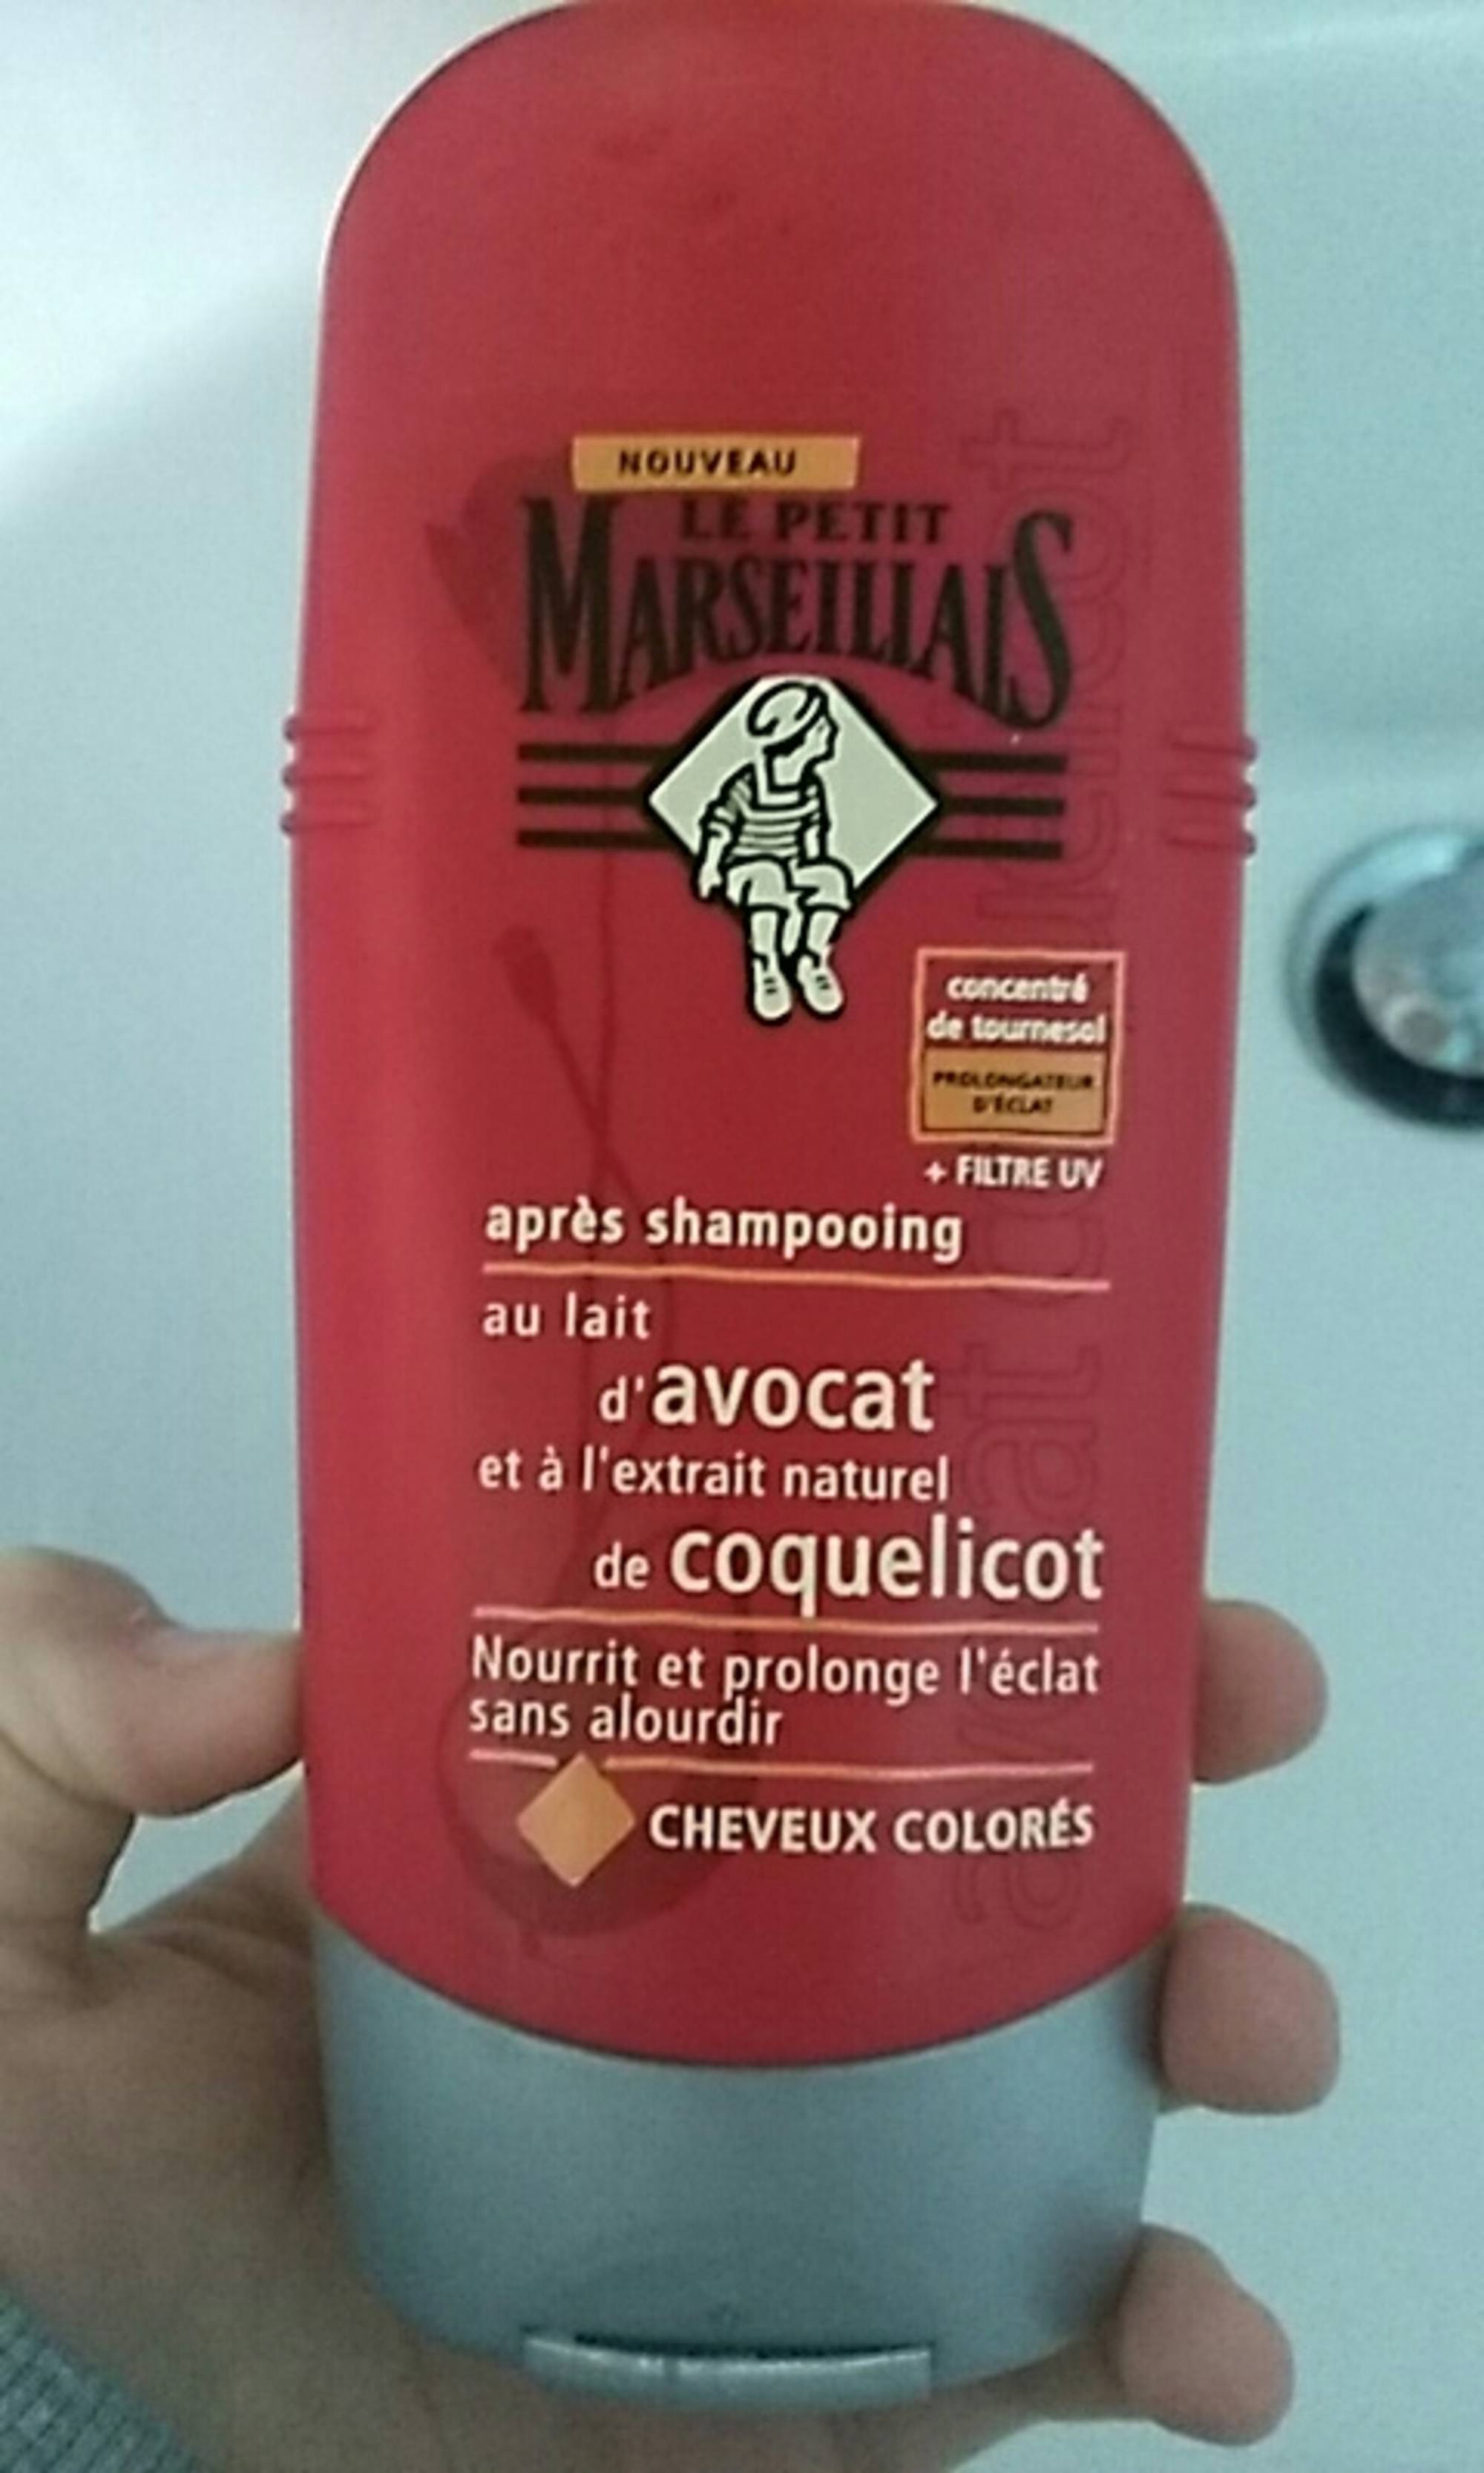 LE PETITS MARSEILLAIS - Après shampooing au lait d'avocat et à l'extrait naturel de coquelicot